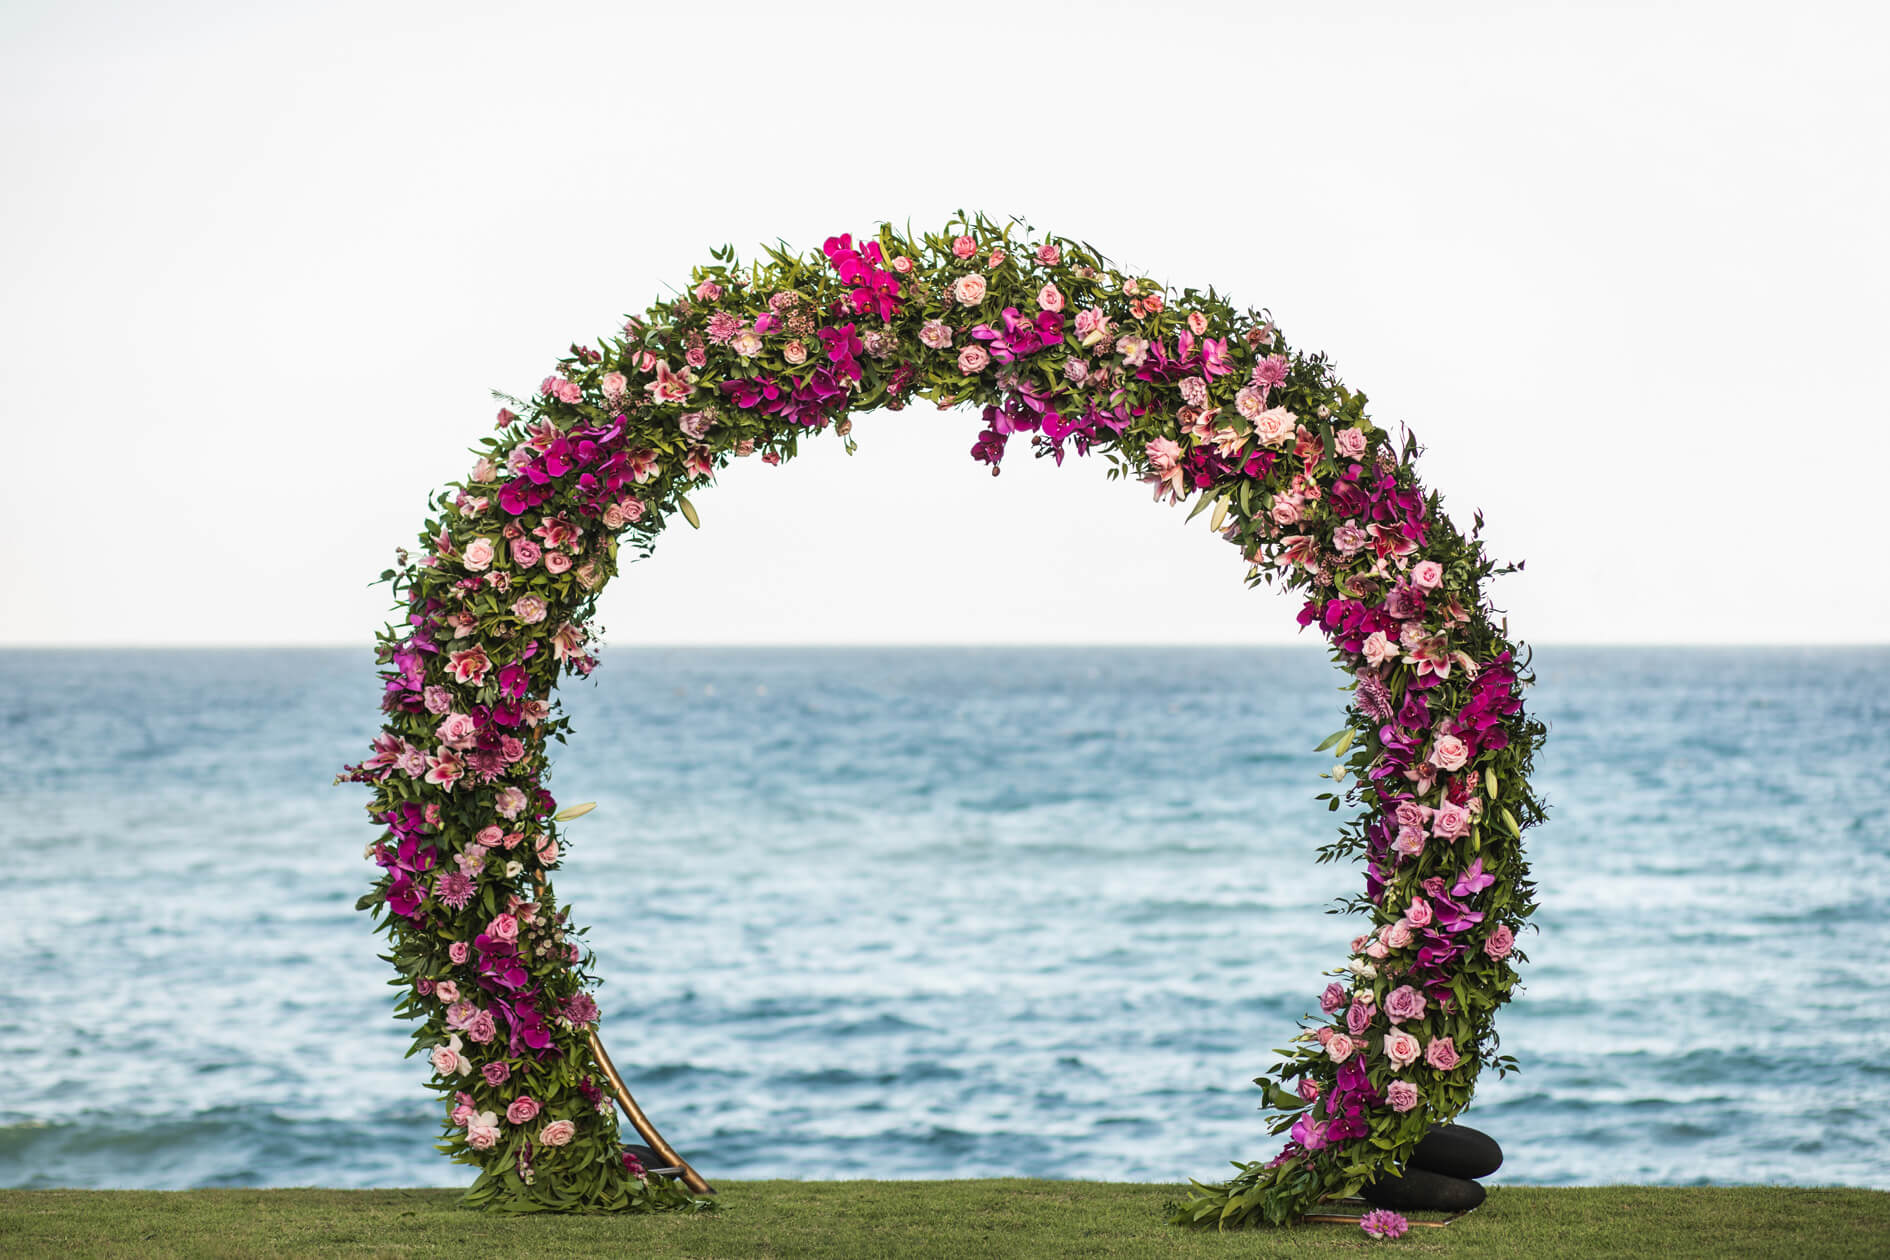 Ventajas y desventajas de celebrar una boda en la playa